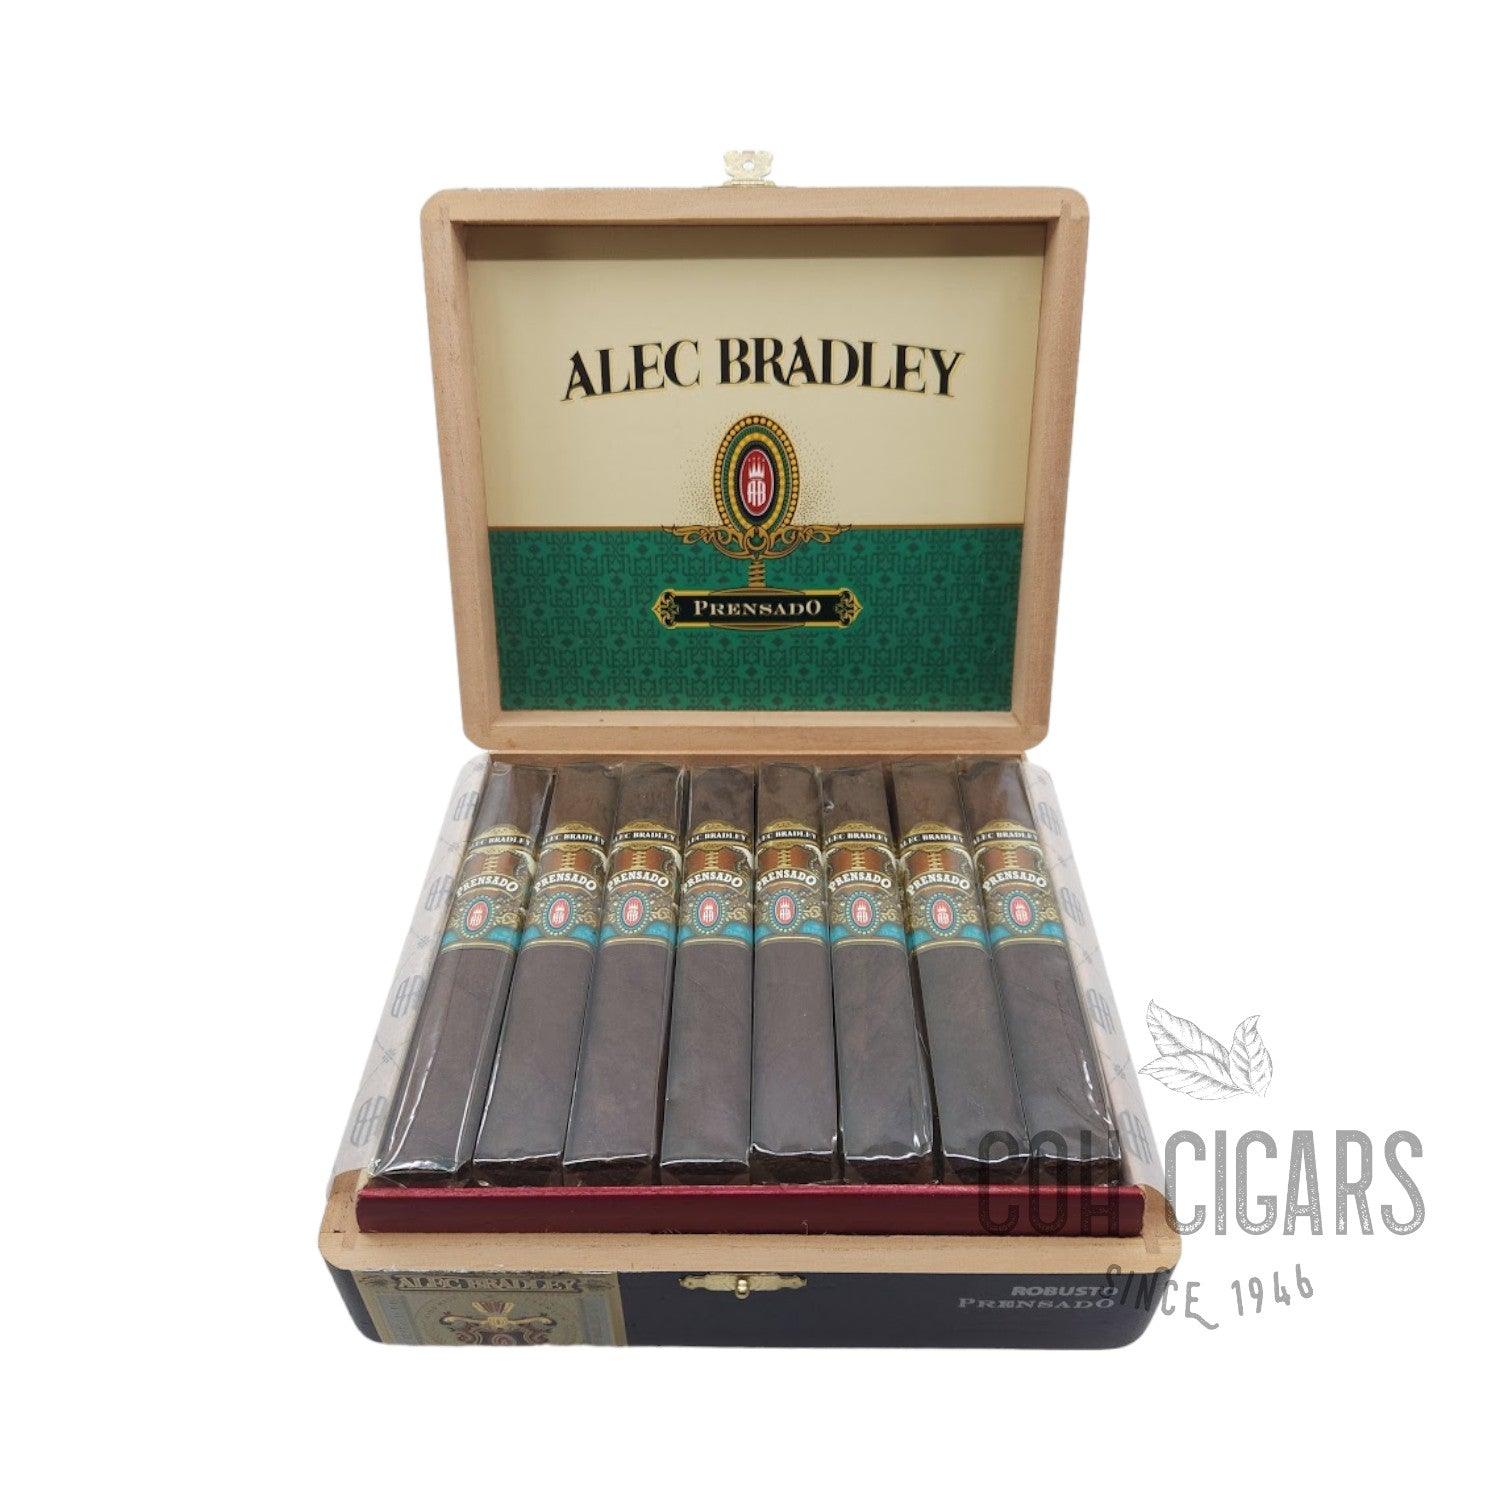 Alec Bradley Cigar | Prensado Gran Toro | Box 24 - HK CohCigars